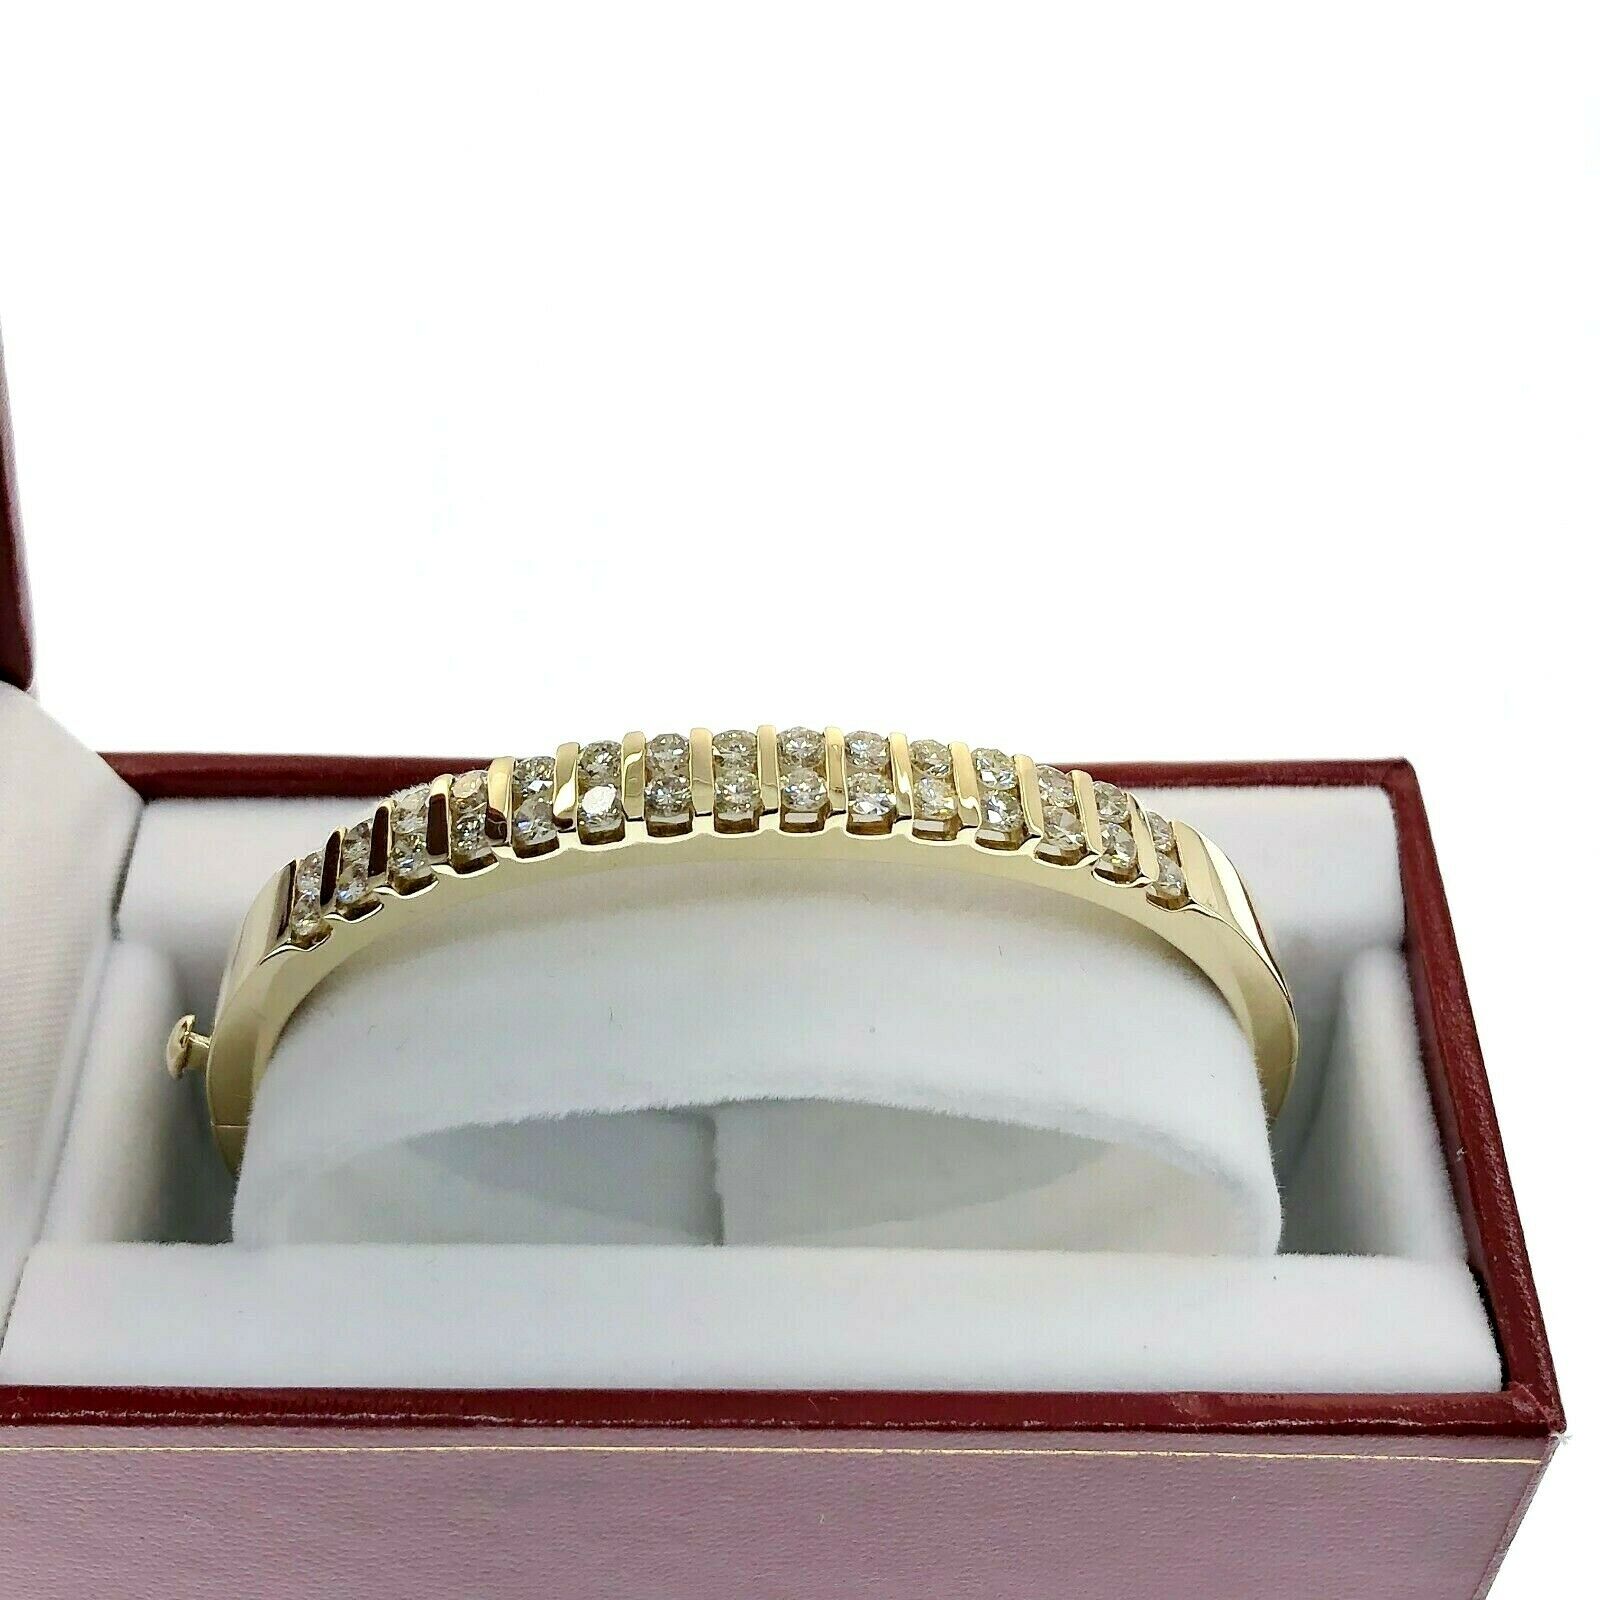 2.50 Carats t.w. Diamond Channel Set Bangle Bracelet 14K Yellow Gold 27 Grams